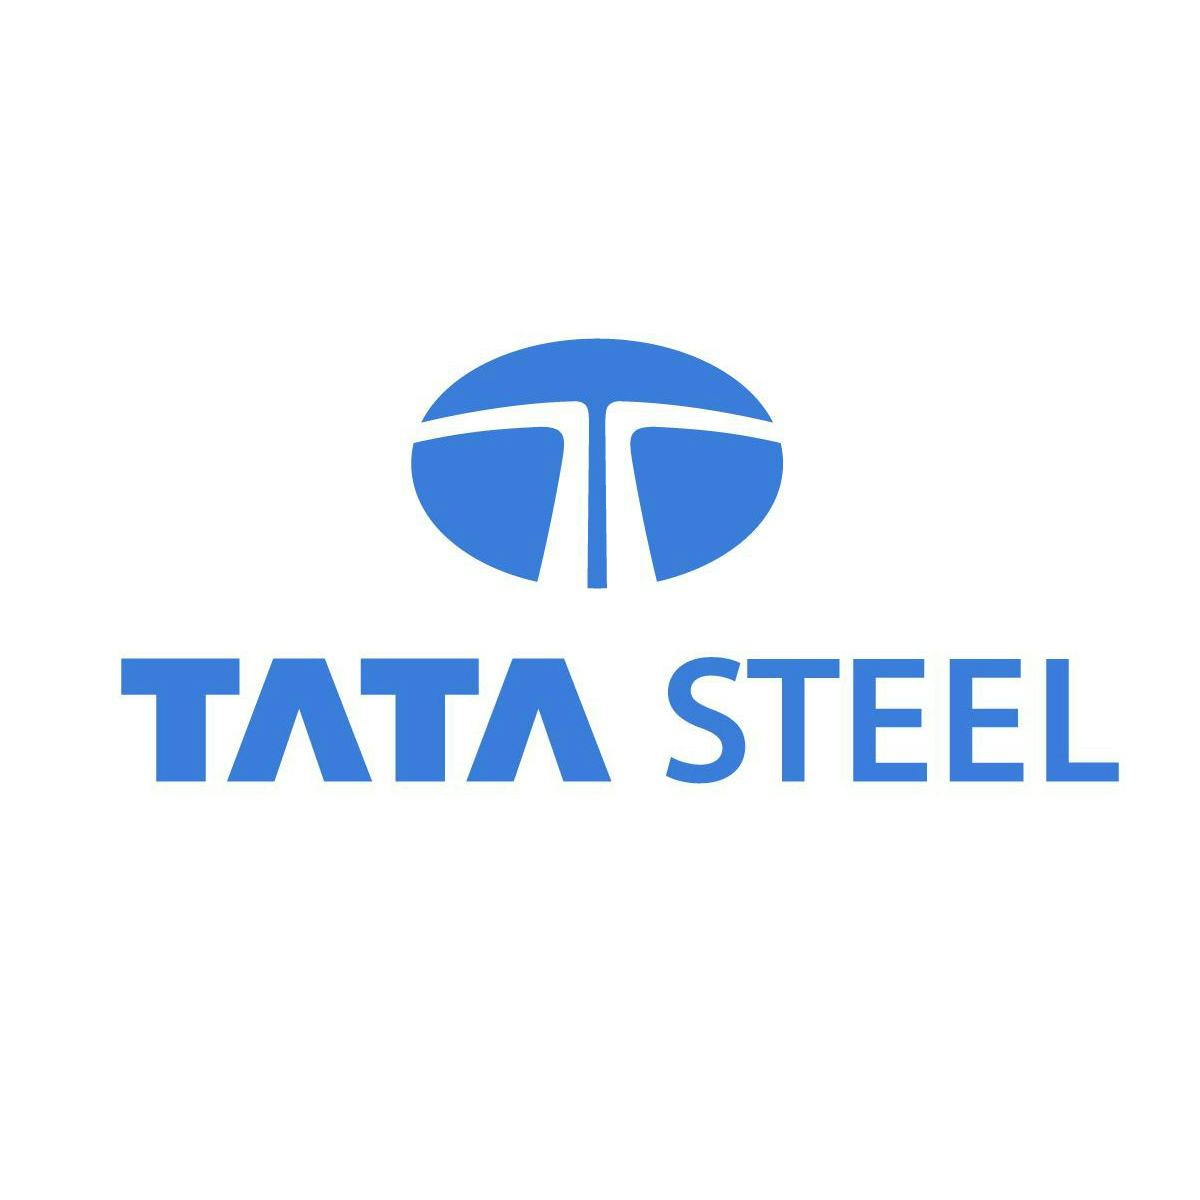 (foto: Tata Steel)|